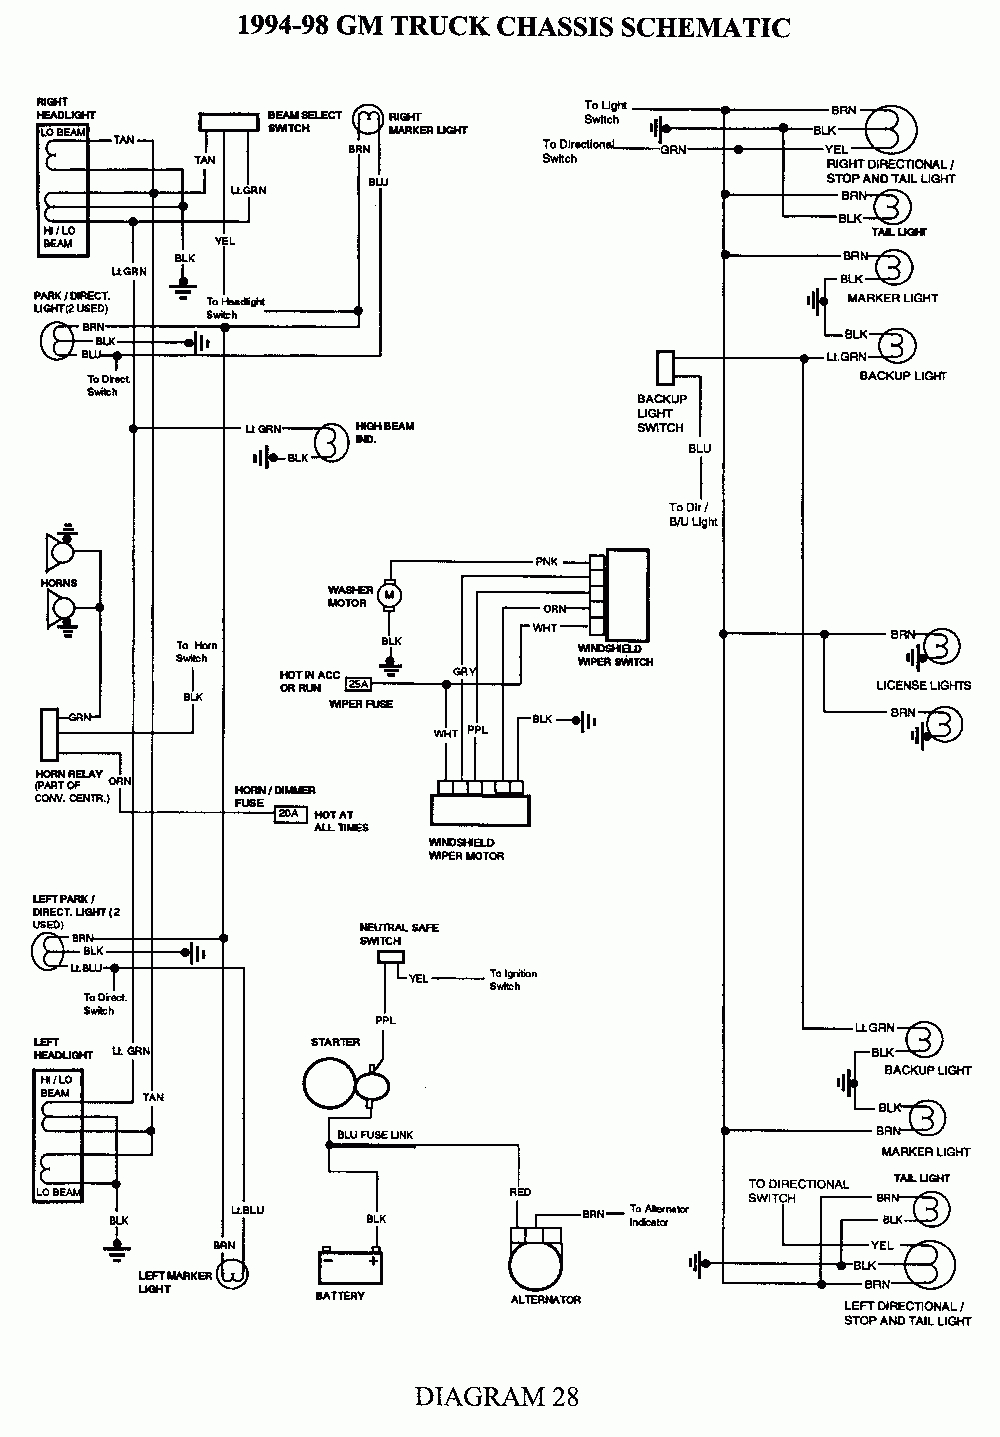 2002 Chevy Silverado Trailer Wiring Diagram | Schematic Diagram - 4 Way Trailer Wiring Diagram